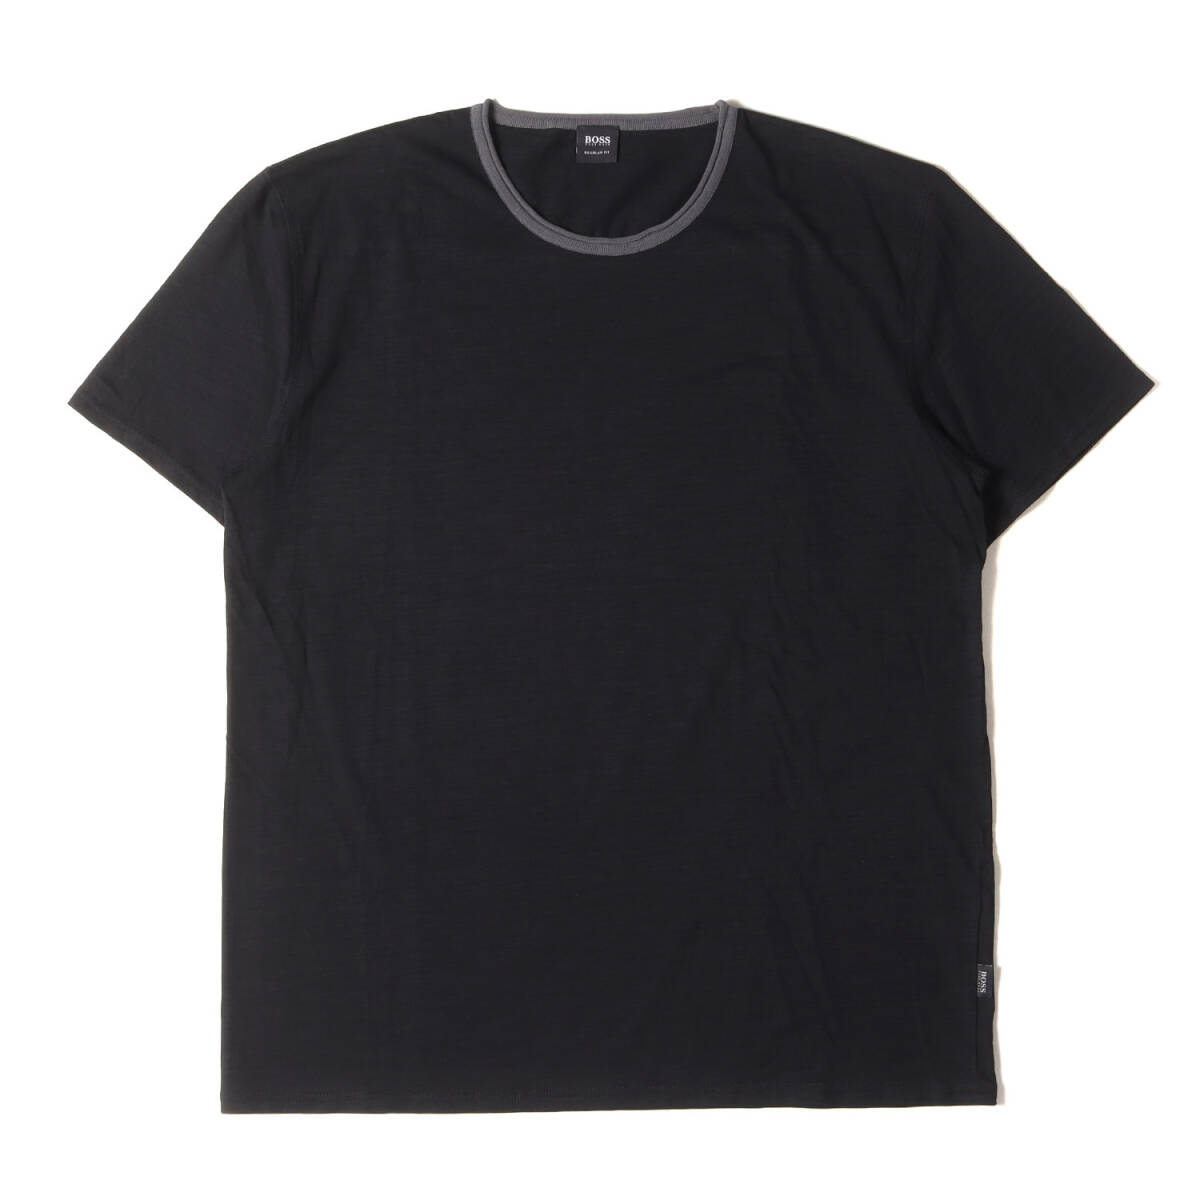 美品 HUGO BOSS ヒューゴボス Tシャツ サイズ:XL コットンスラブ プレーン クルーネック 半袖Tシャツ REGULAR FIT ブラック 黒 トップス_画像1